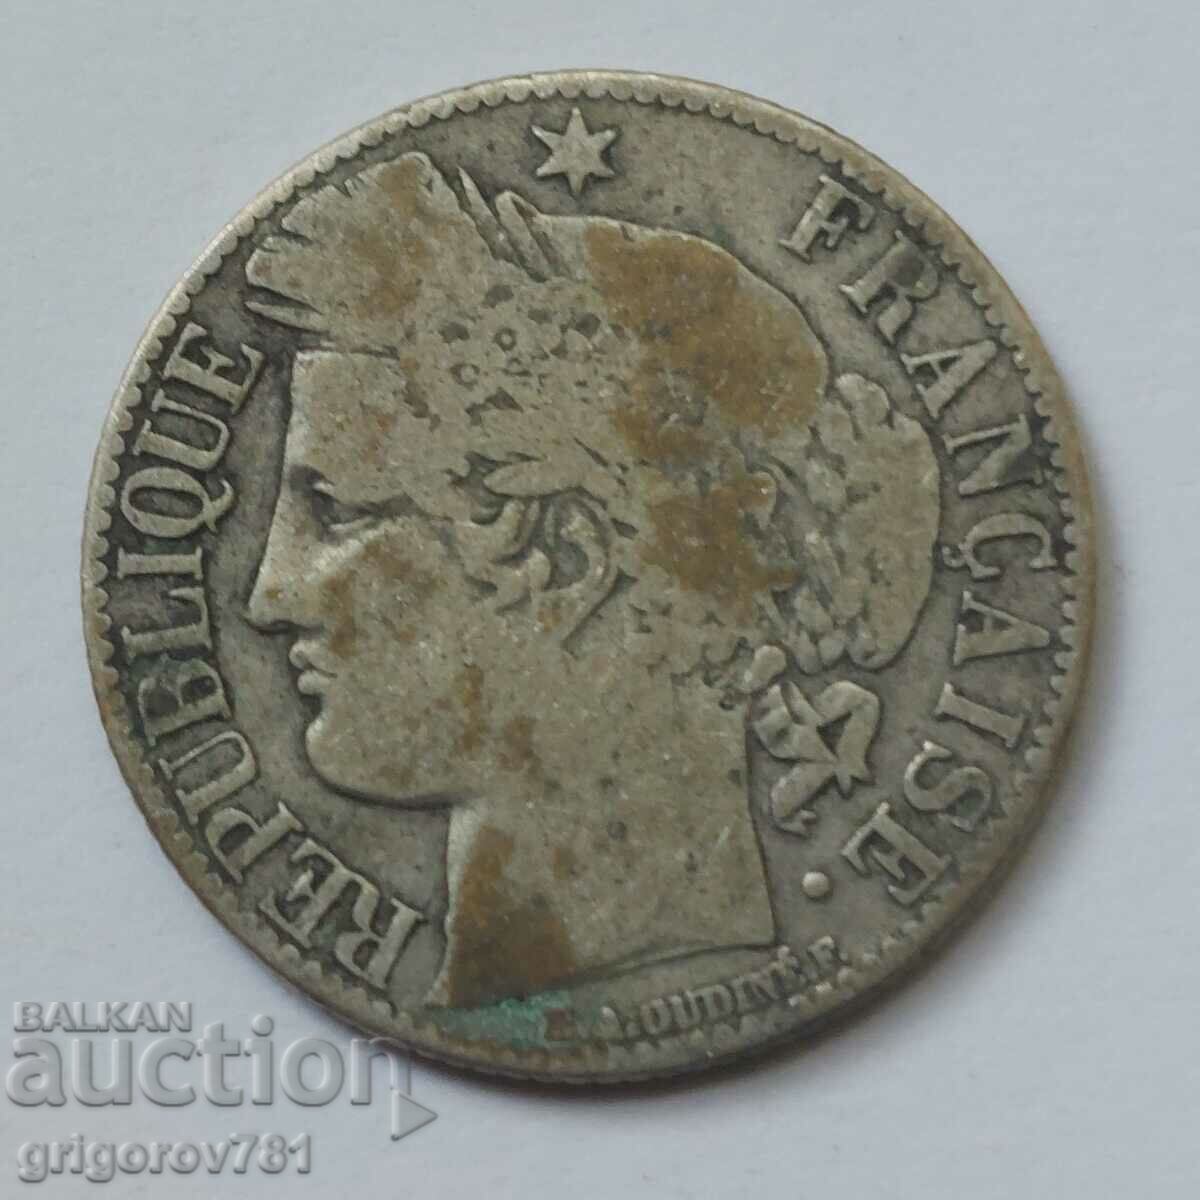 Ασήμι 1 φράγκου Γαλλία 1872 K - Ασημένιο νόμισμα #50